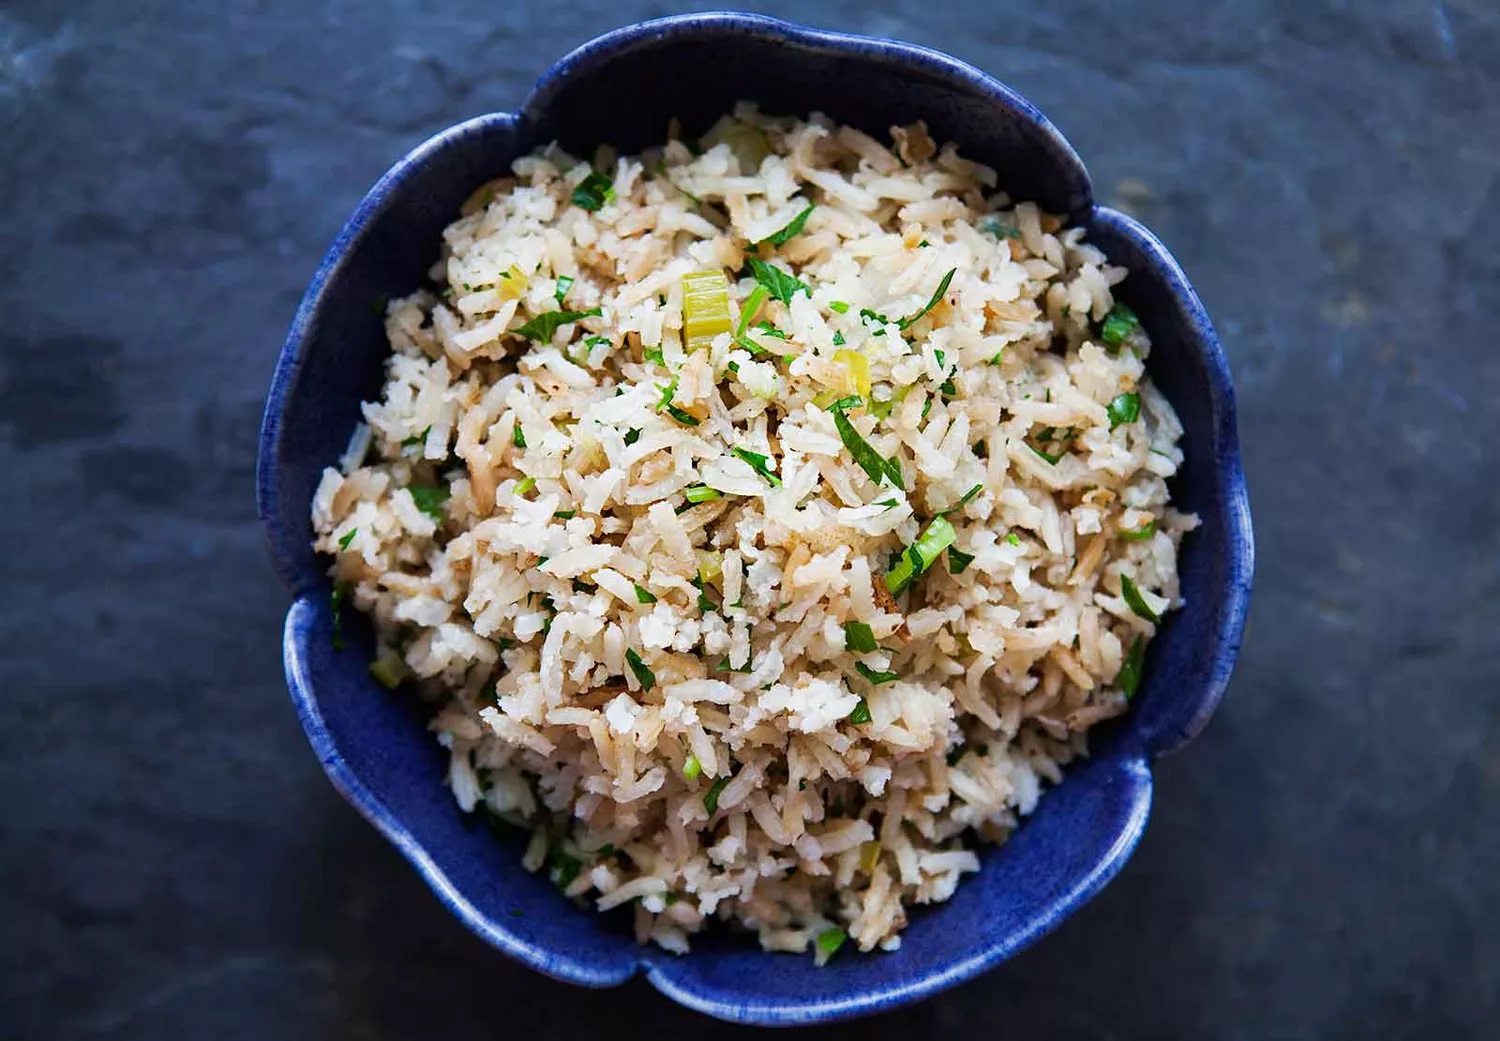 arroz com cebola aipo caldo de galinha legumes rapido facil